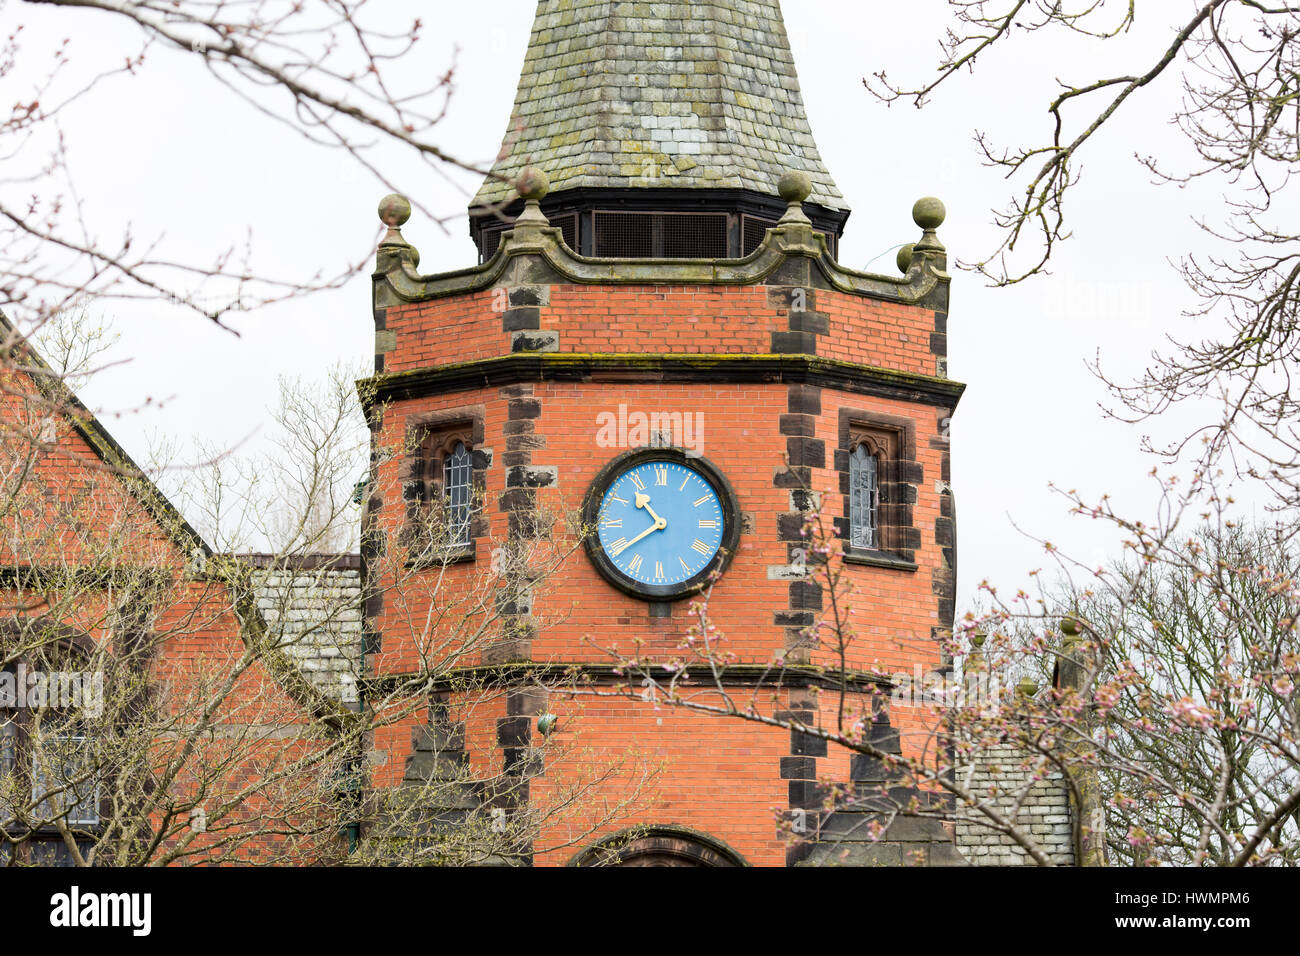 Port Sunlight - un modello di villaggio e borgo nel Metropolitan Borough of Wirral, Merseyside. Liceo di clock tower Foto Stock